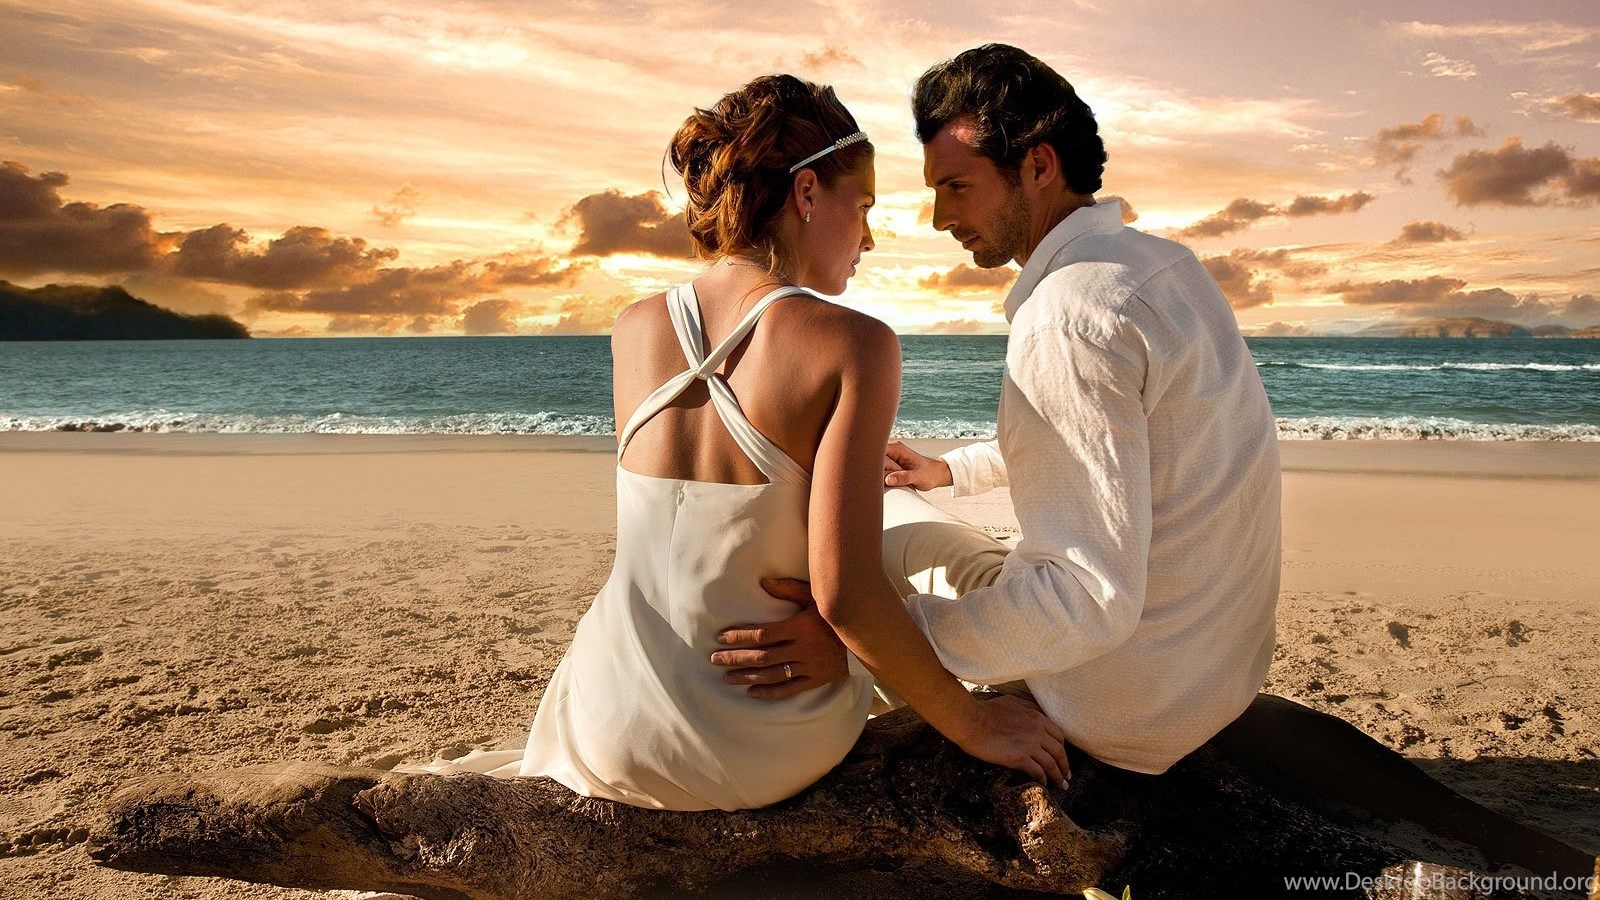 Любовь мужчины мнение мужчин. Счастливые влюбленные. Влюбленные на берегу моря. Парочка на берегу моря. Мужчина и женщина.